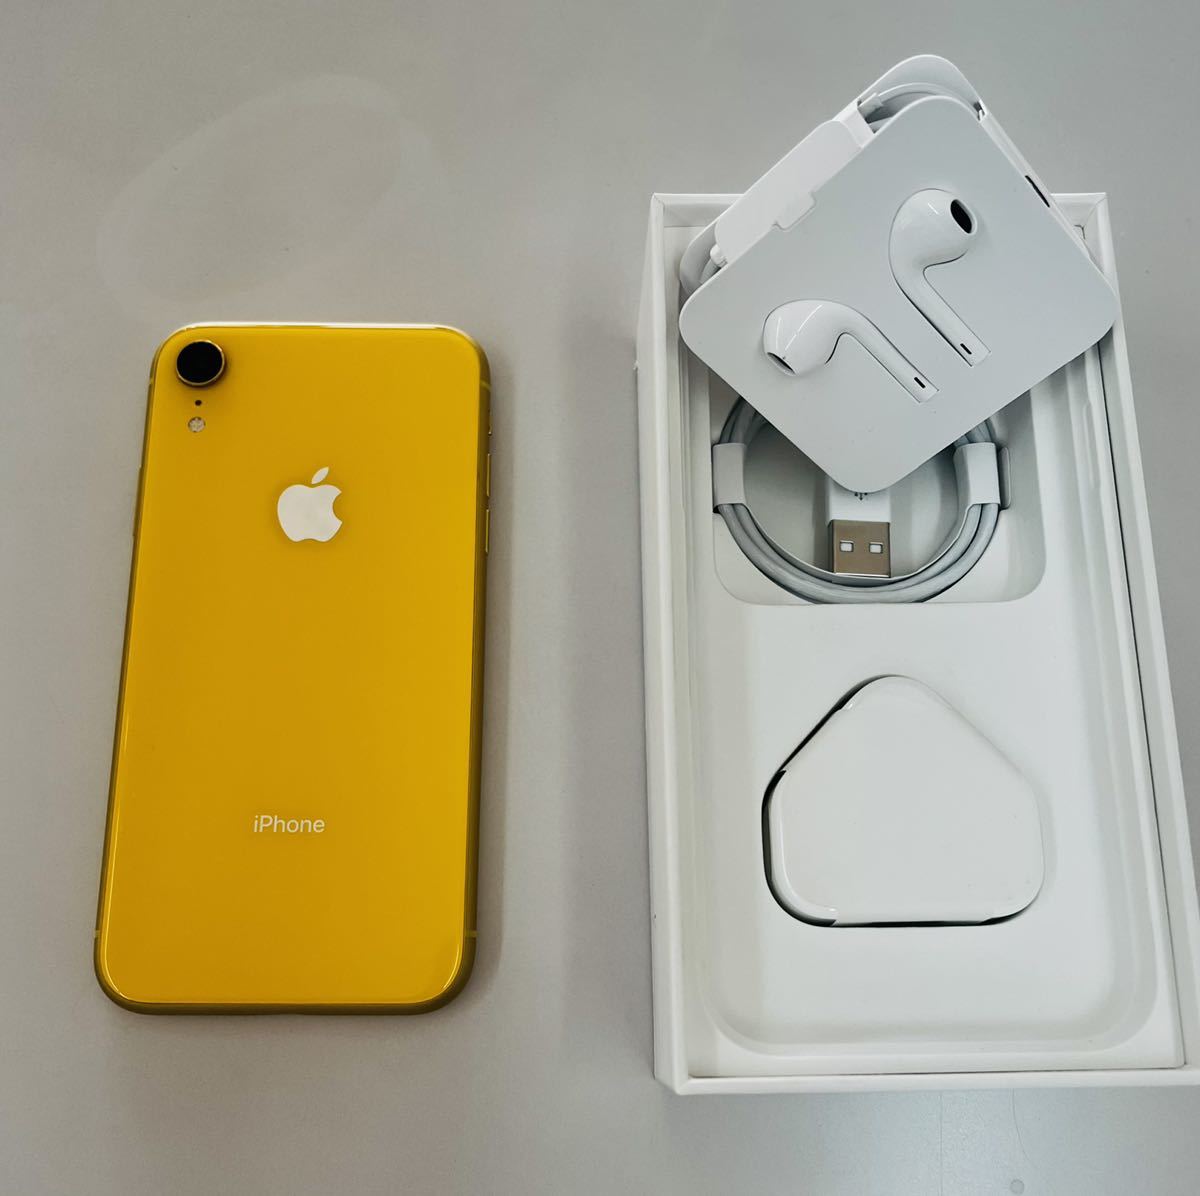 [香港版 シャッター音なし] Apple iPhone XR 256GB yellow 香港版 Model A2108 SIMフリー版 海外版 4G  物理 Dual-SIM